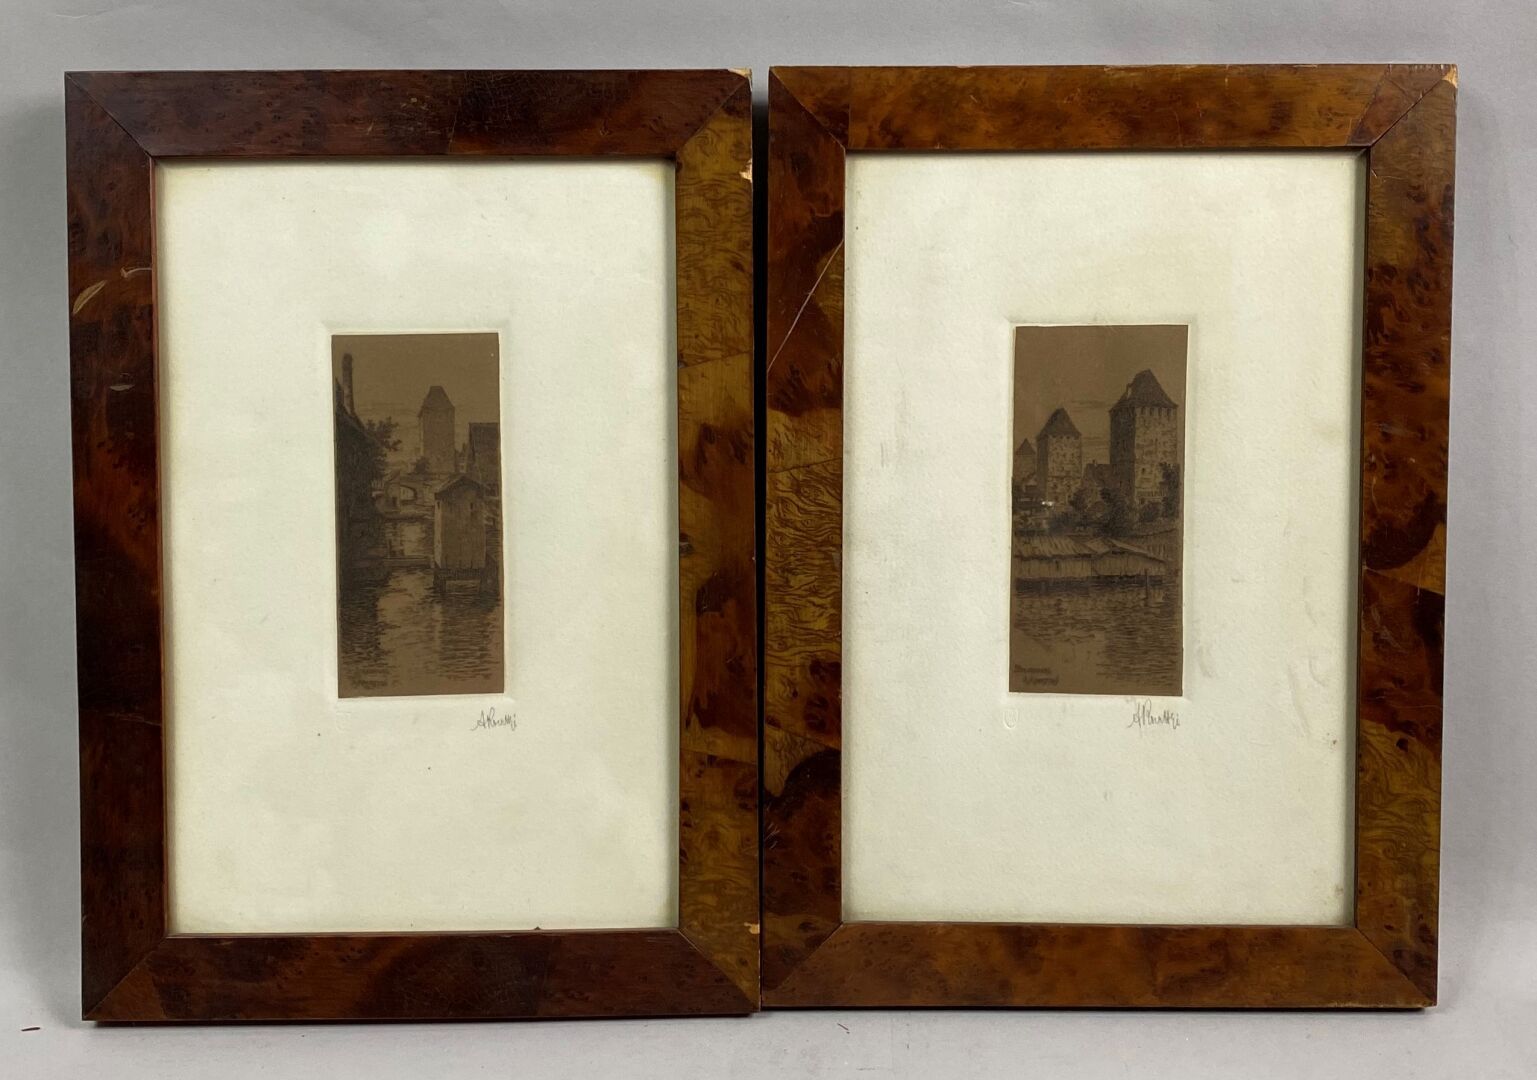 Null KOERTTGE Albert (1861-1940)

Straßburg

Zwei kleine Radierungen auf braunem&hellip;